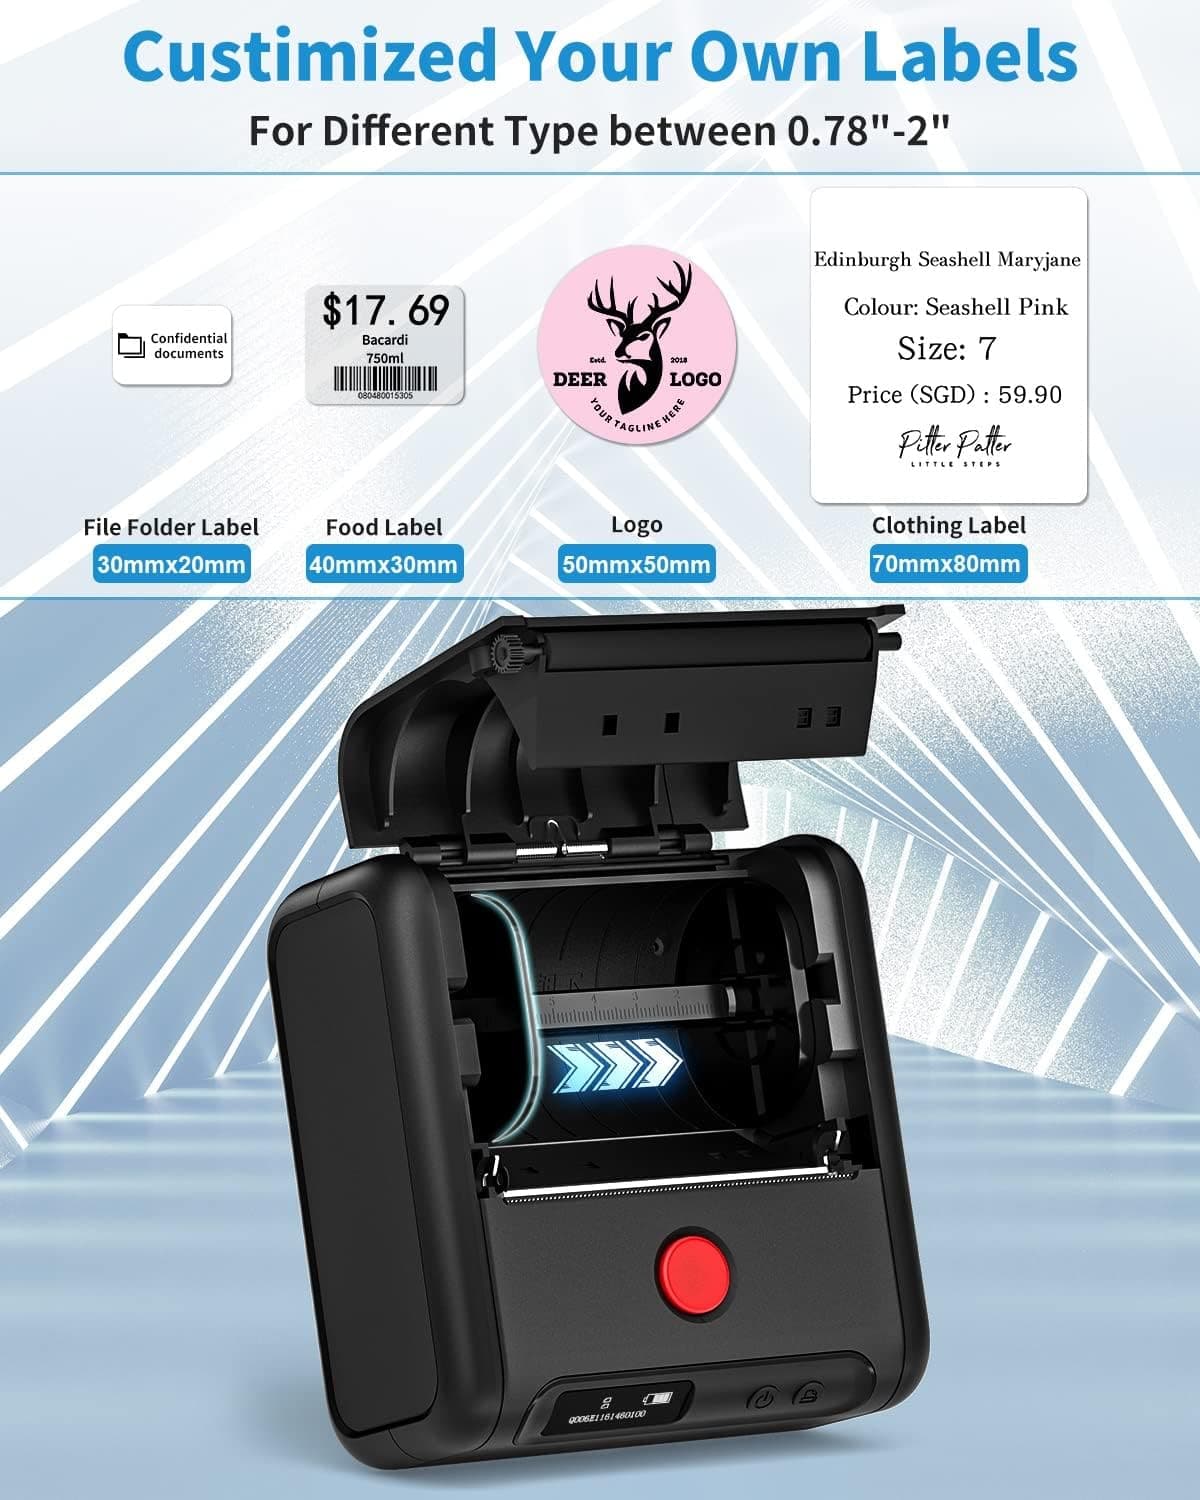 M200 Bluetooth Imprimante d'étiquettes,80 mm imprimante etiquette  autocollante Thermique，imprimante code barre，Compatible avec Android &  iOS,Postuler à Bureau,entrepôt,transport,boutique.Blanc MOONSTA